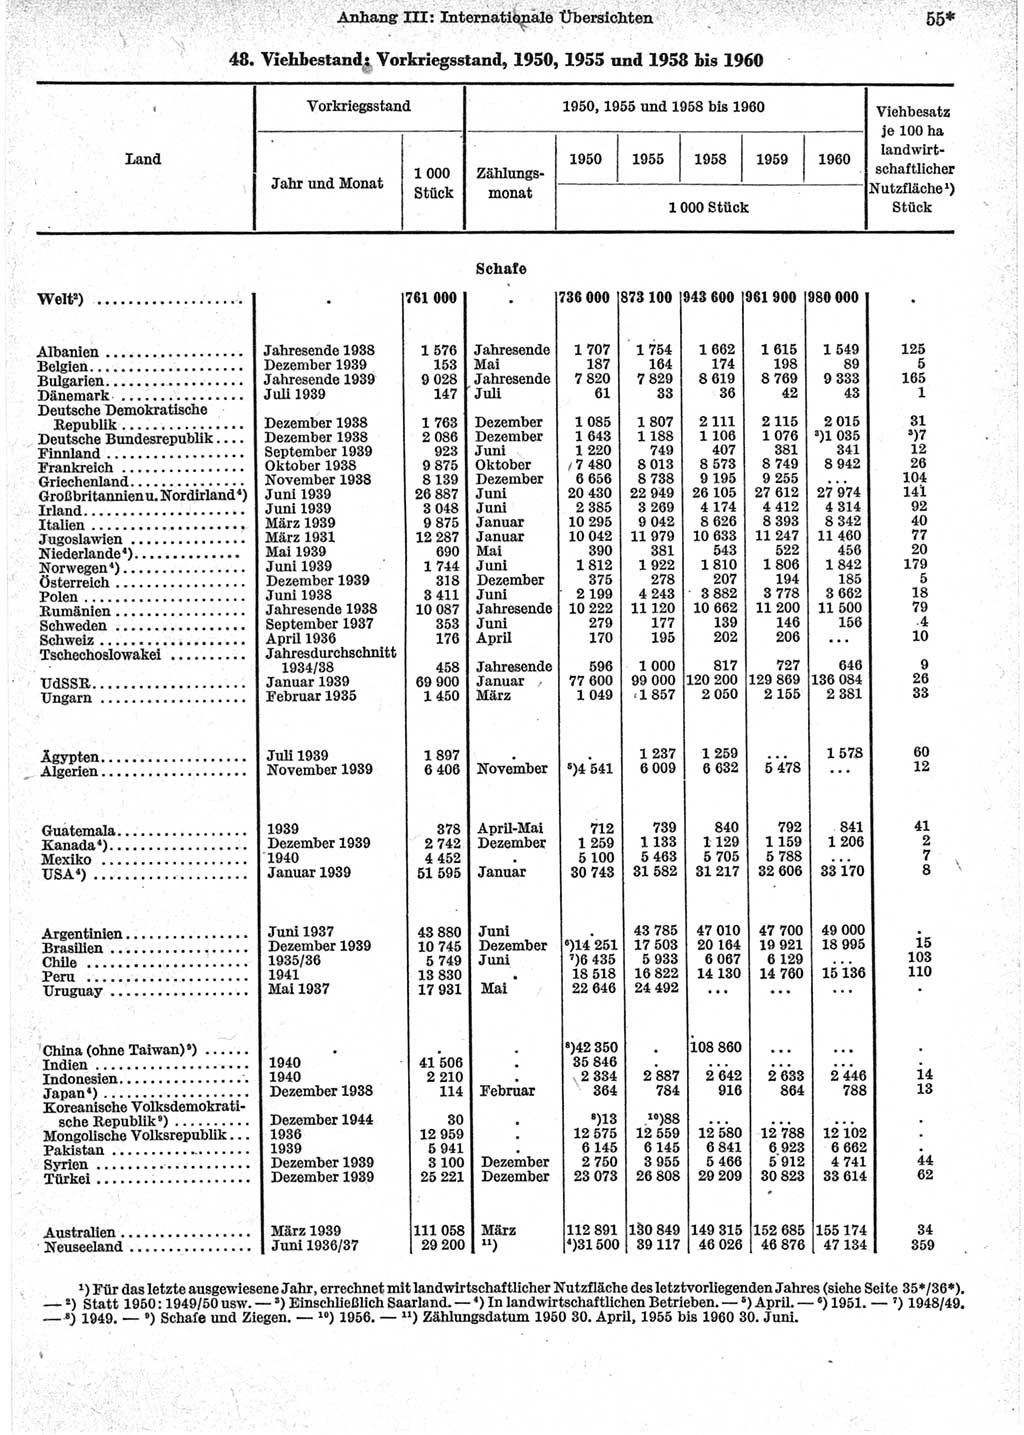 Statistisches Jahrbuch der Deutschen Demokratischen Republik (DDR) 1962, Seite 55 (Stat. Jb. DDR 1962, S. 55)